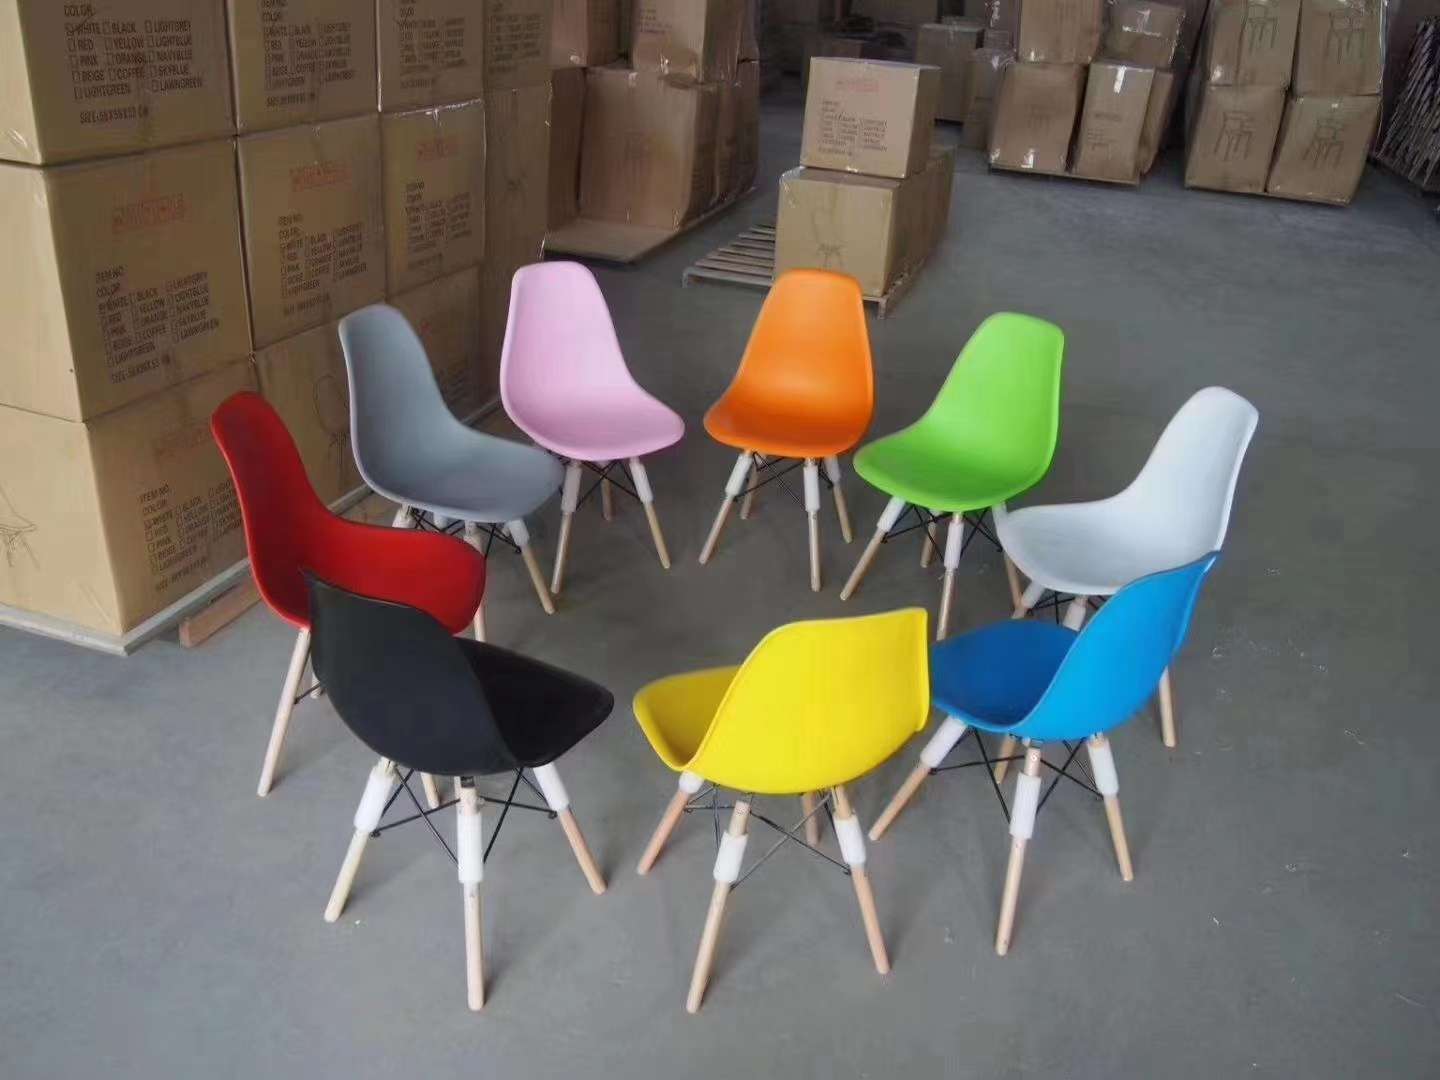 休闲椅子高档椅子咖啡厅椅子餐椅饭店依稀网红椅子流行椅子